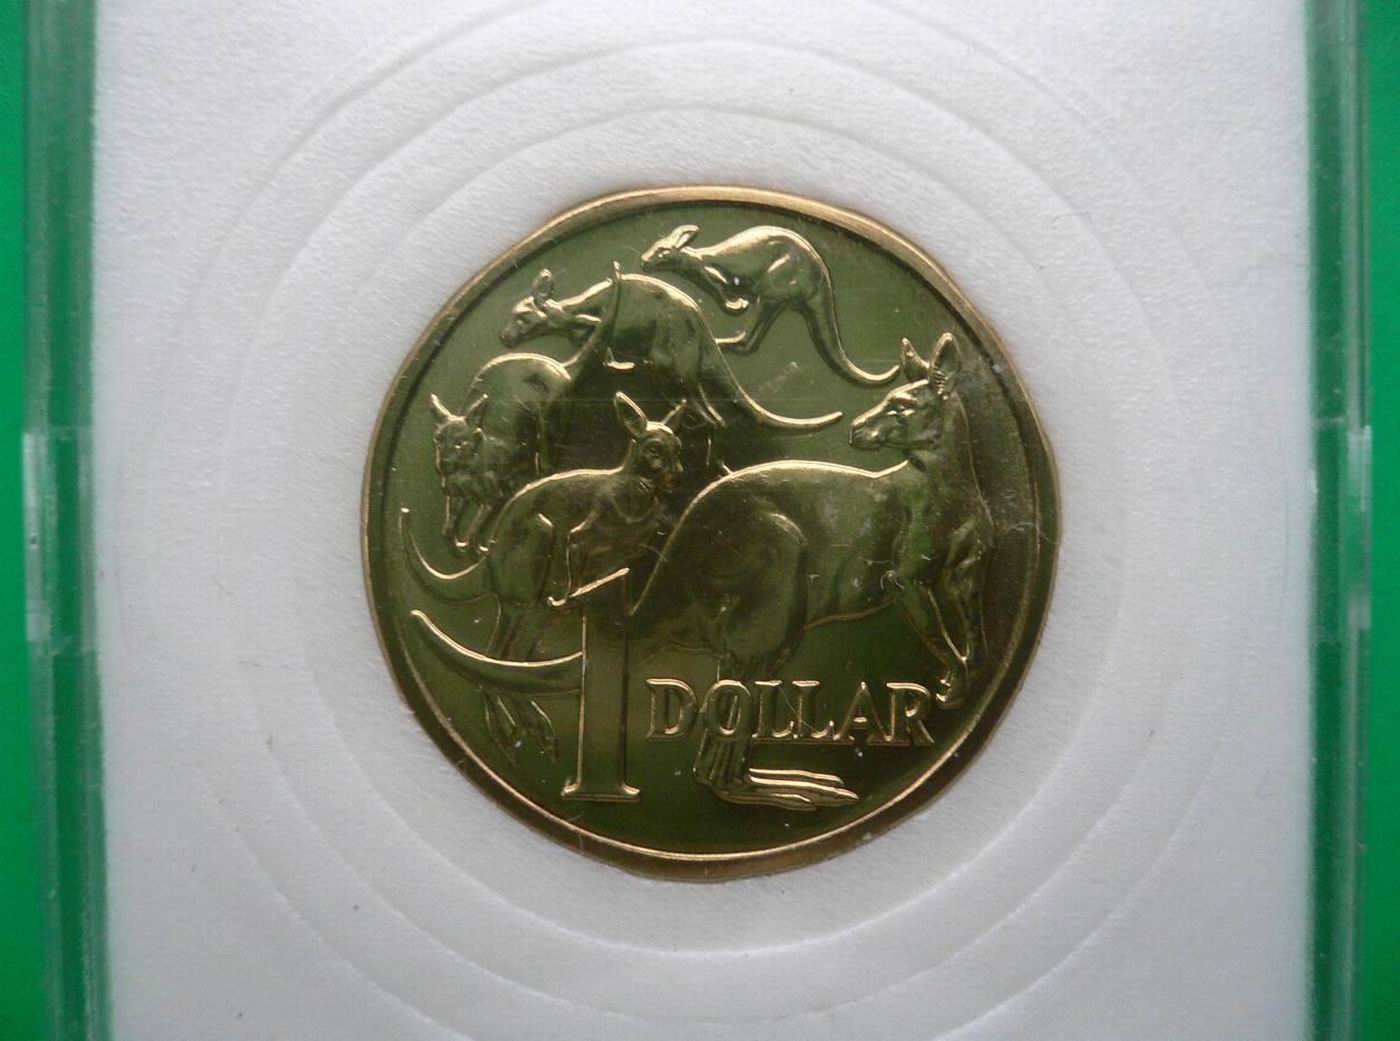 【获奖币】澳大利亚1985年1澳元 袋鼠 硬币 中